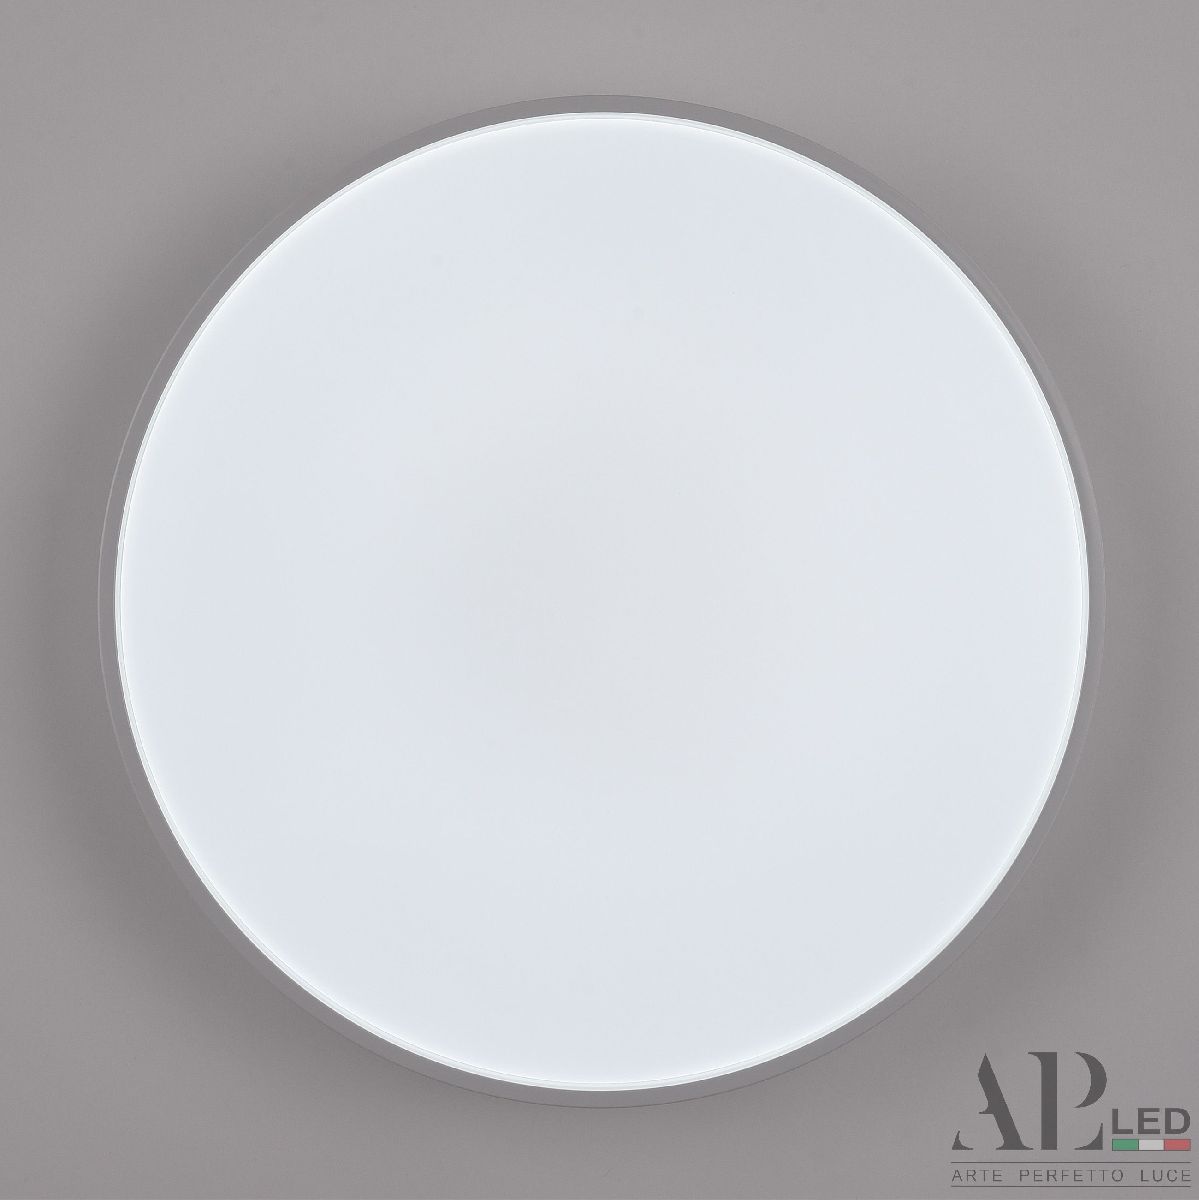 Потолочный светильник Arte Perfetto Luce Toscana PRO 3315.XM302-2-374/24W White TD